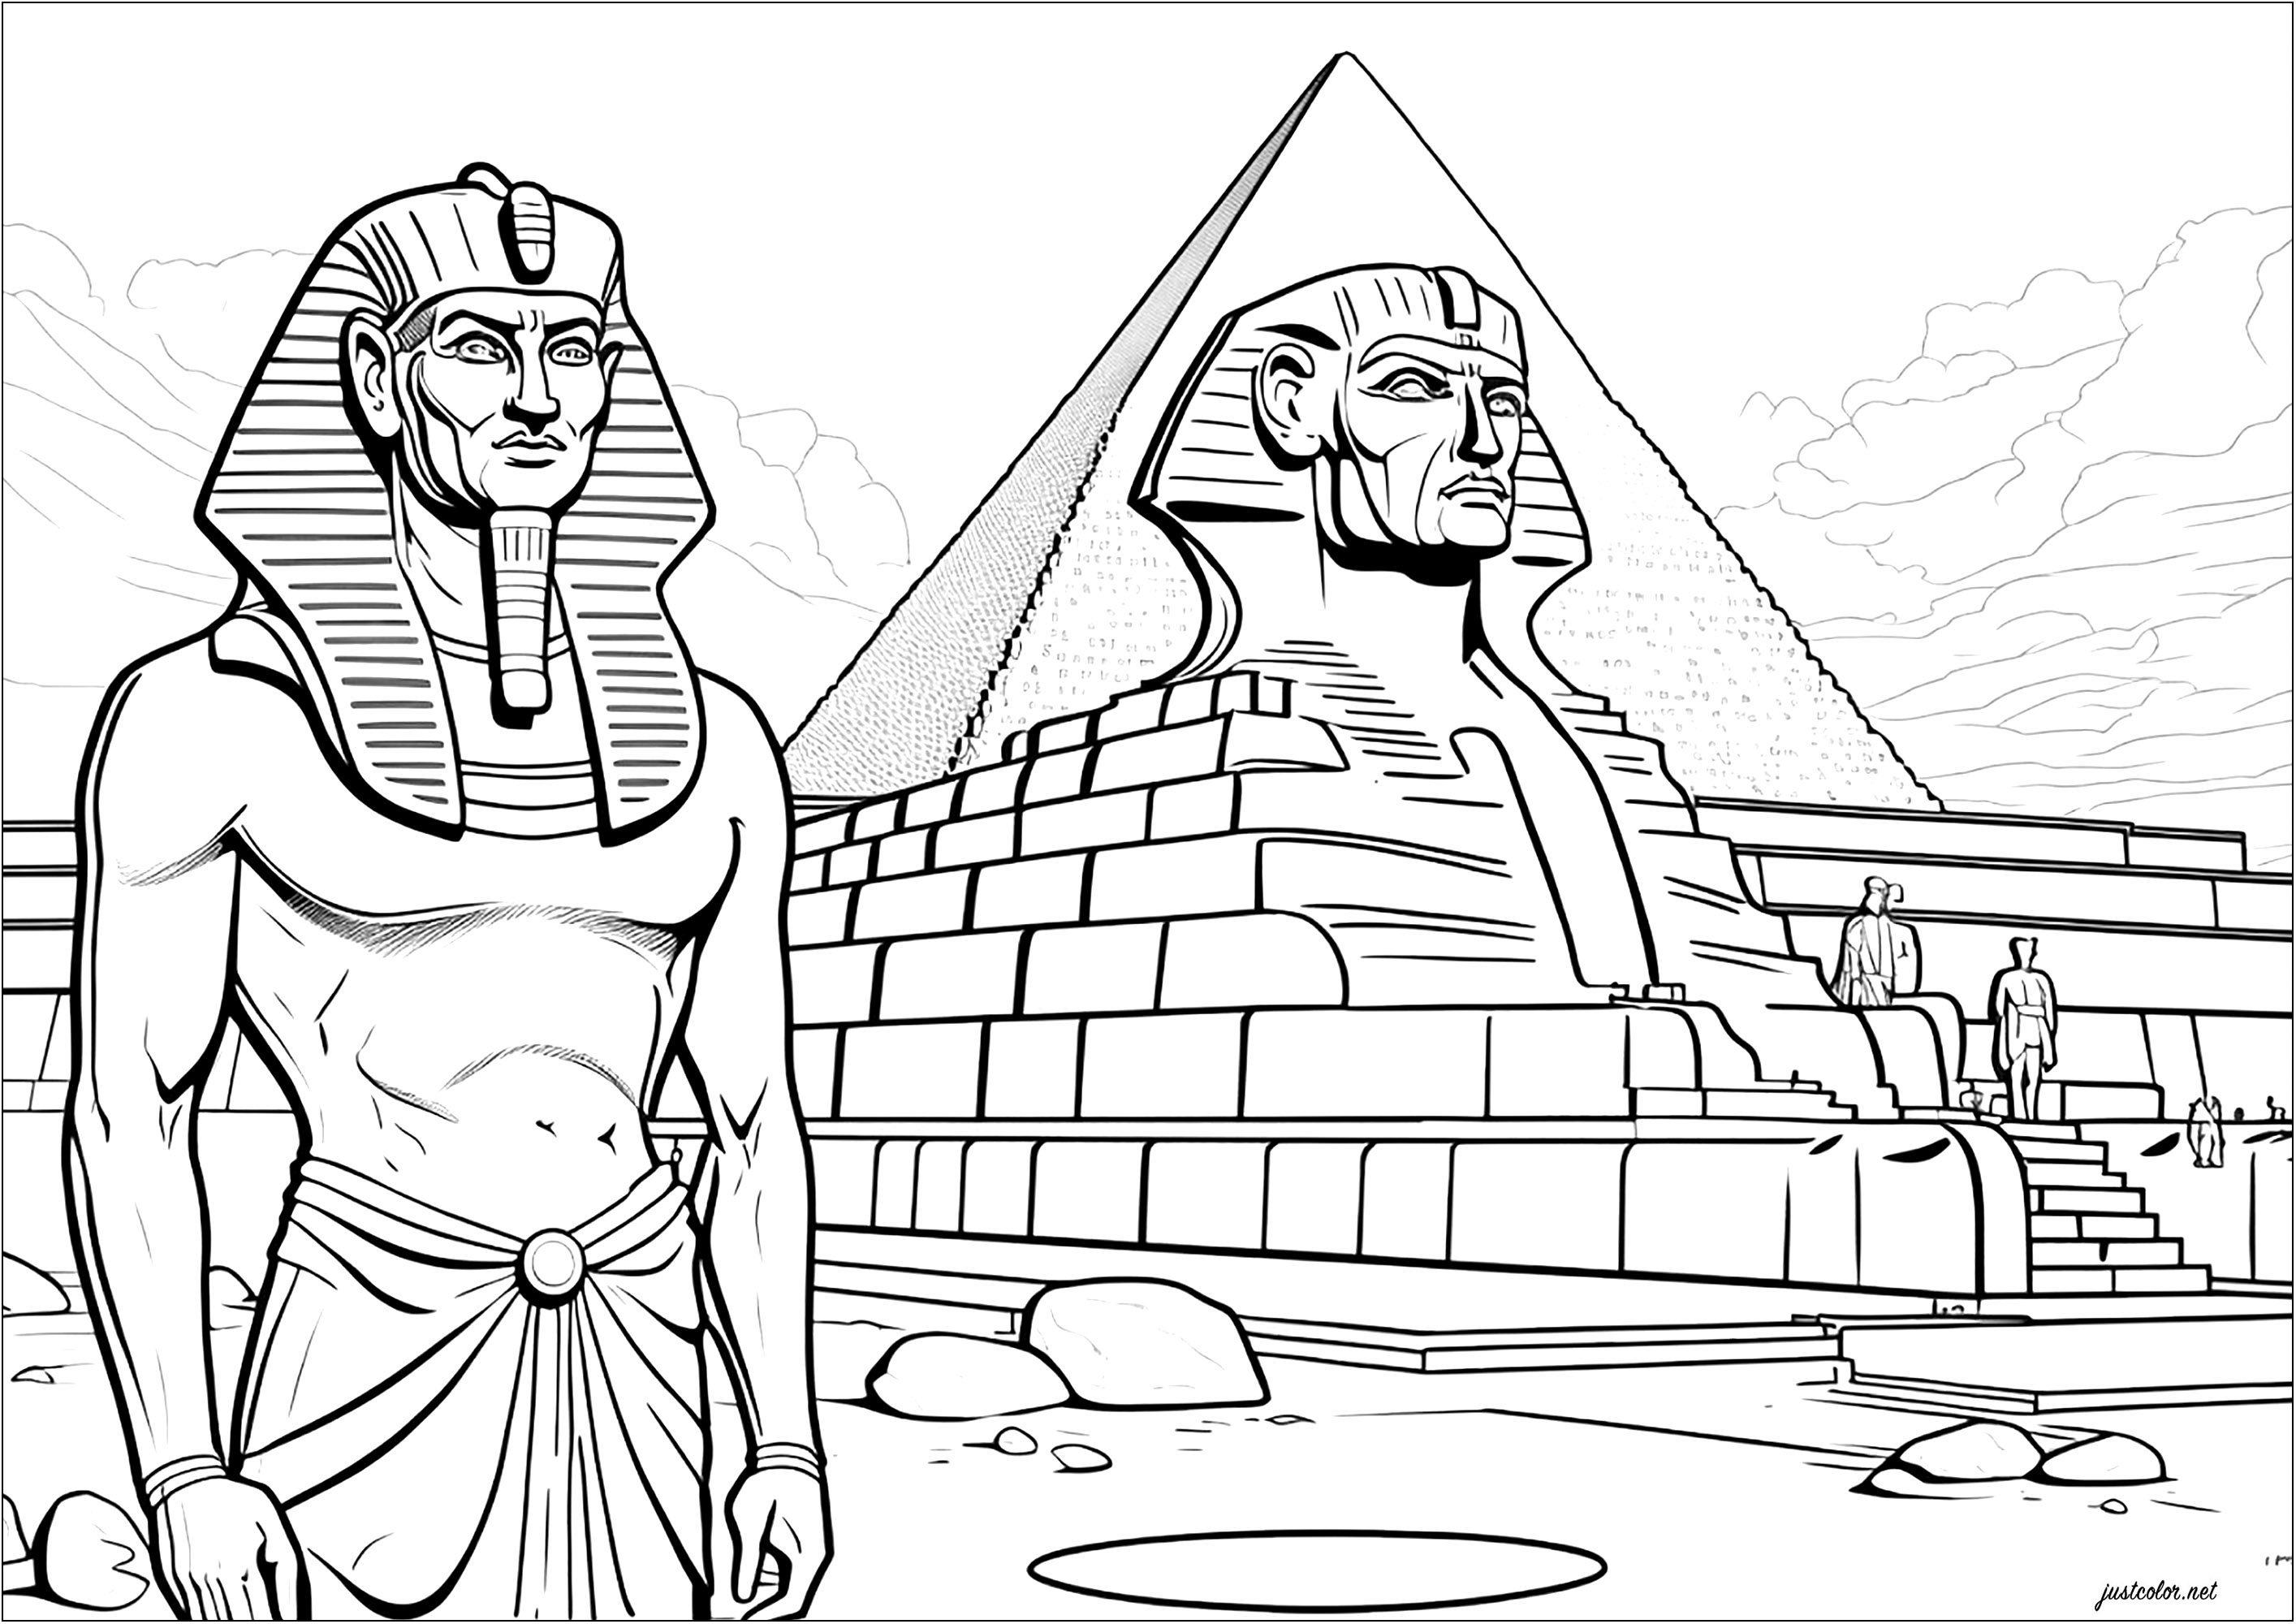 Faraón ante esfinge y pirámide. Esta página para colorear representa a un faraón de pie delante de un esfinge que lo representa y una gran pirámide.
